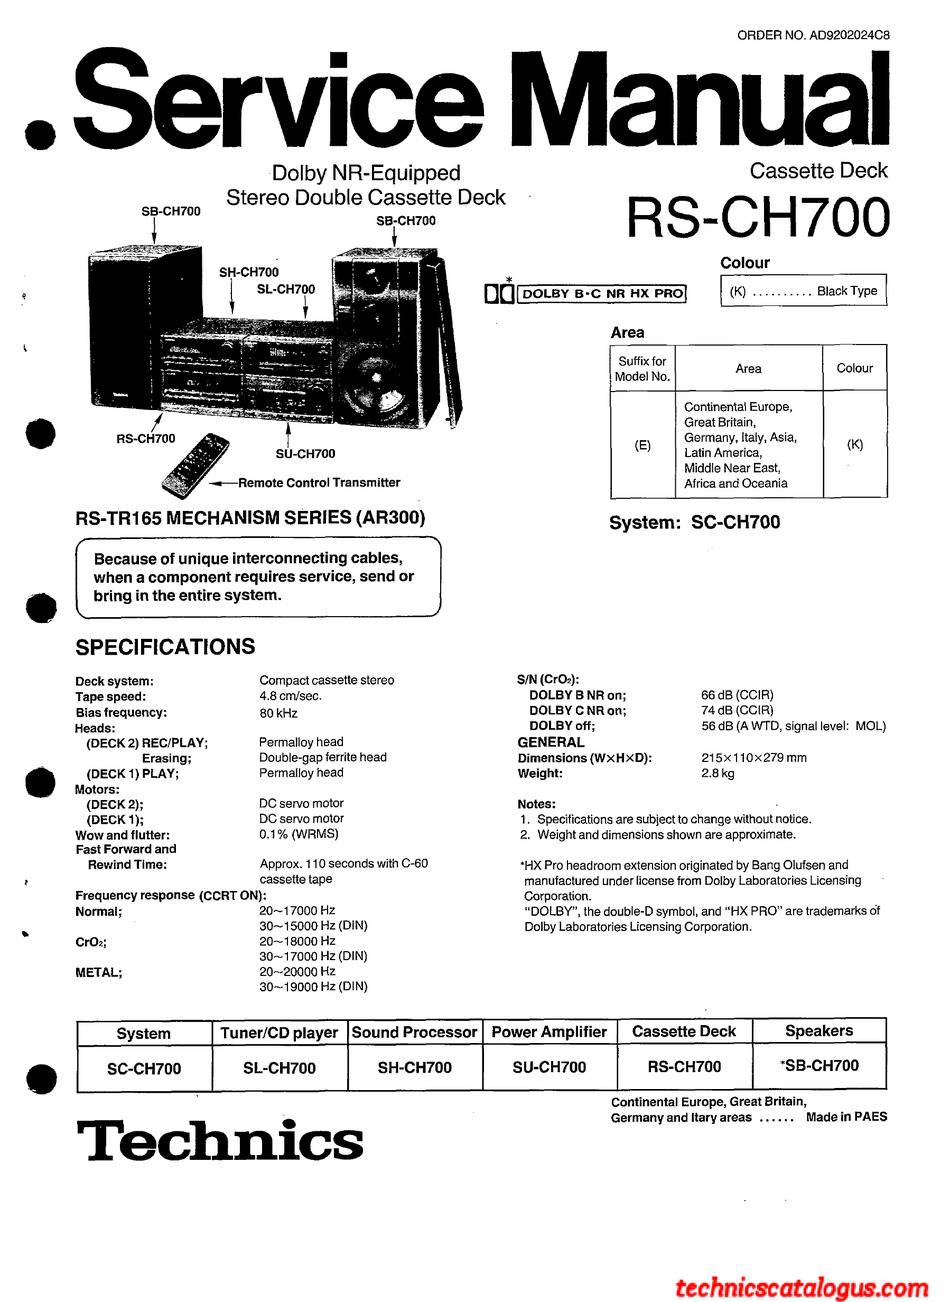 Technics RS-CH700